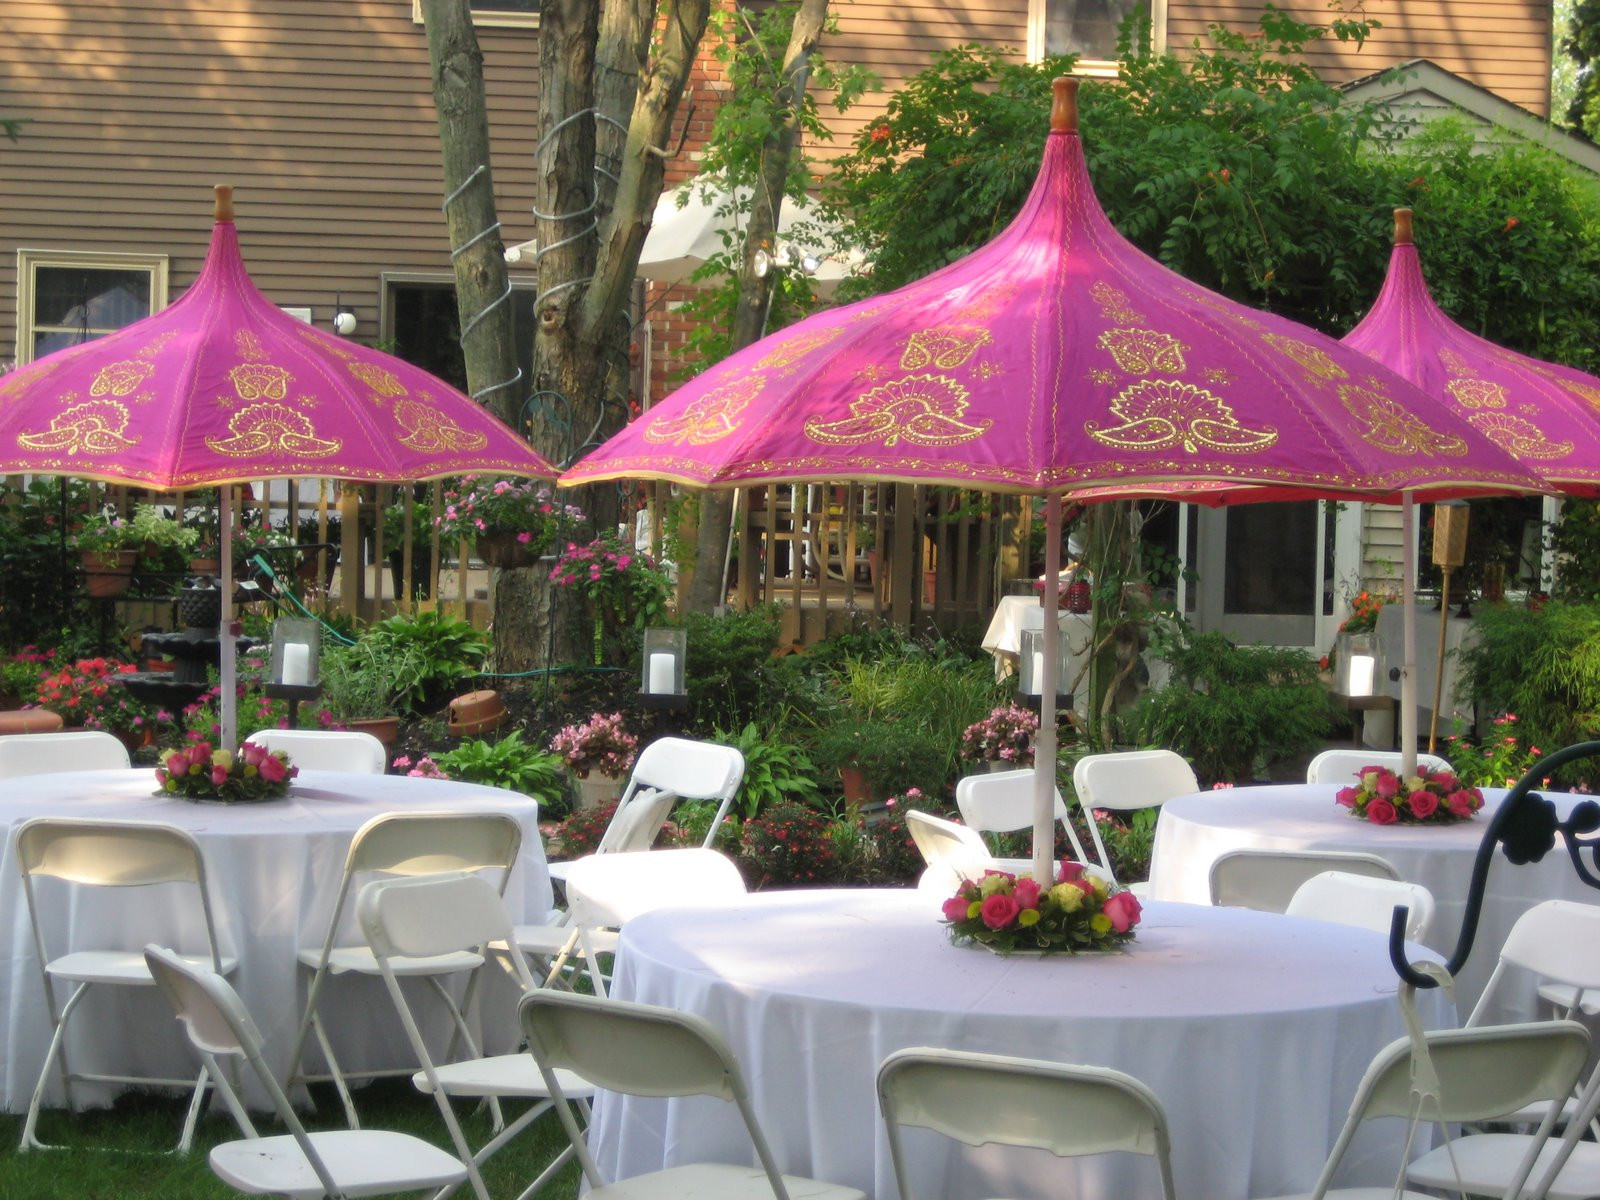 Backyard Party Design Ideas
 37 Table Decoration Ideas For A Summer Garden Party